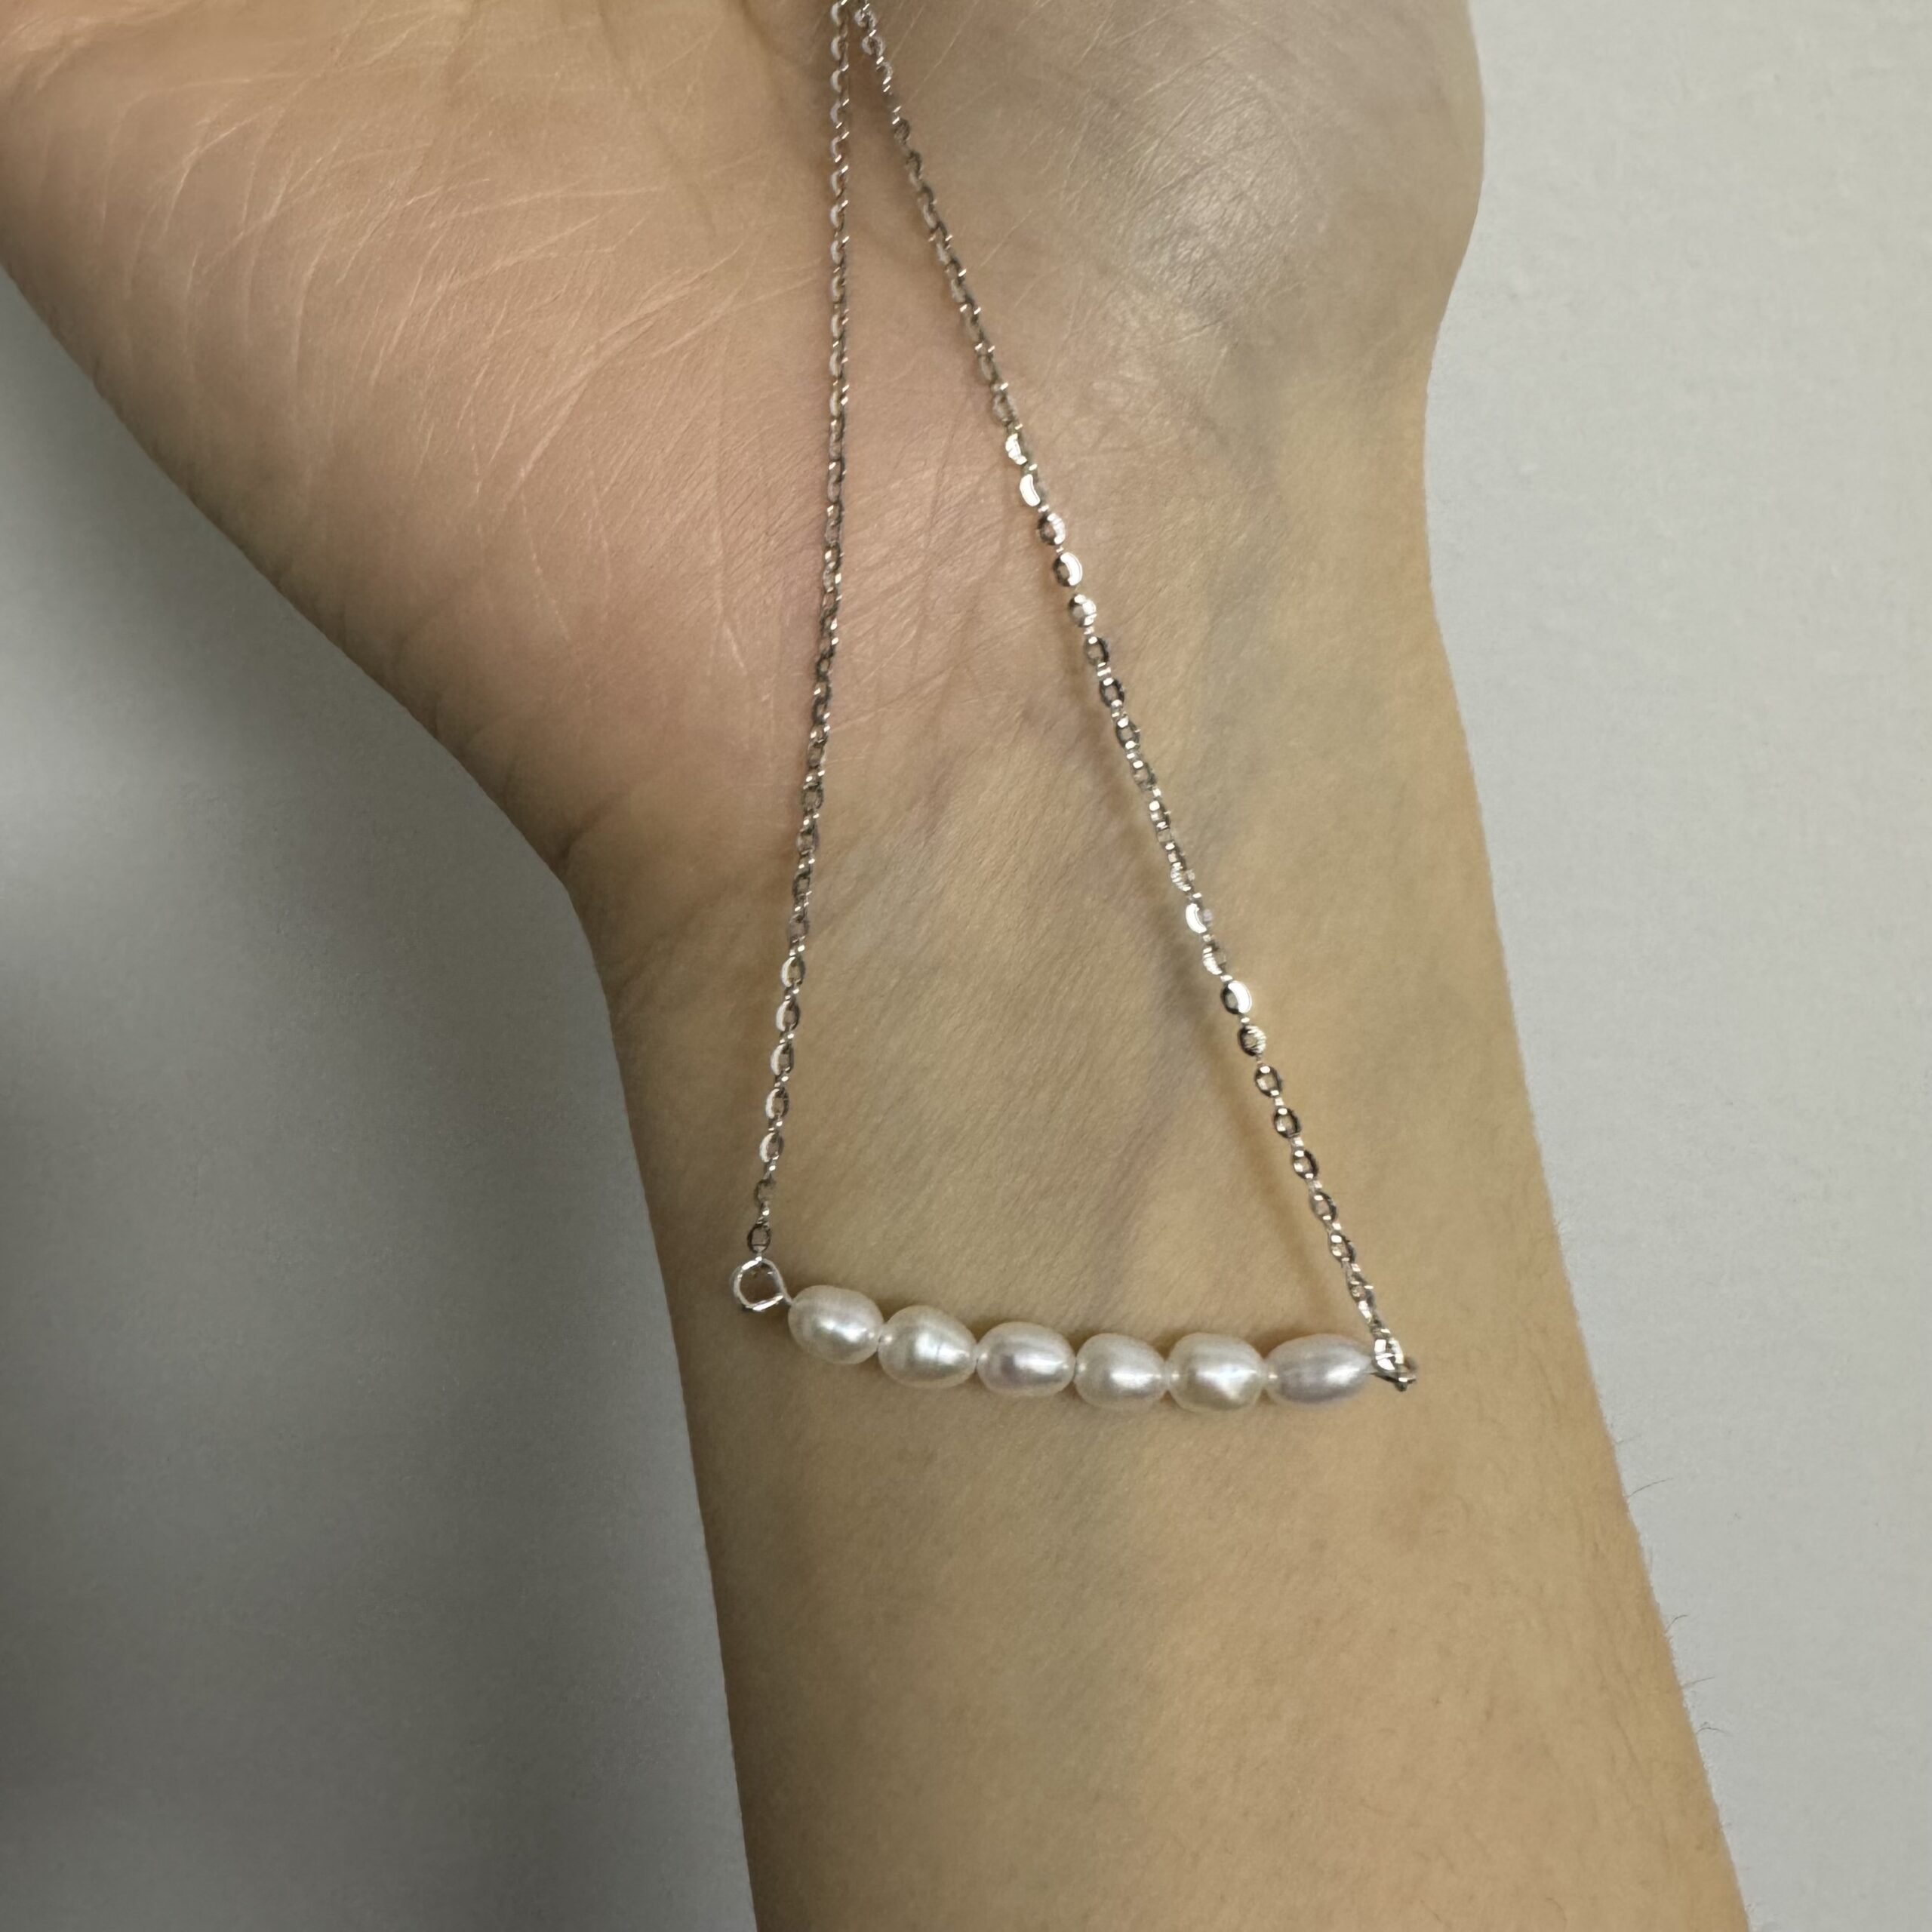 Bracelet de Cheville Perle – Charme Délicat, Argent photo review